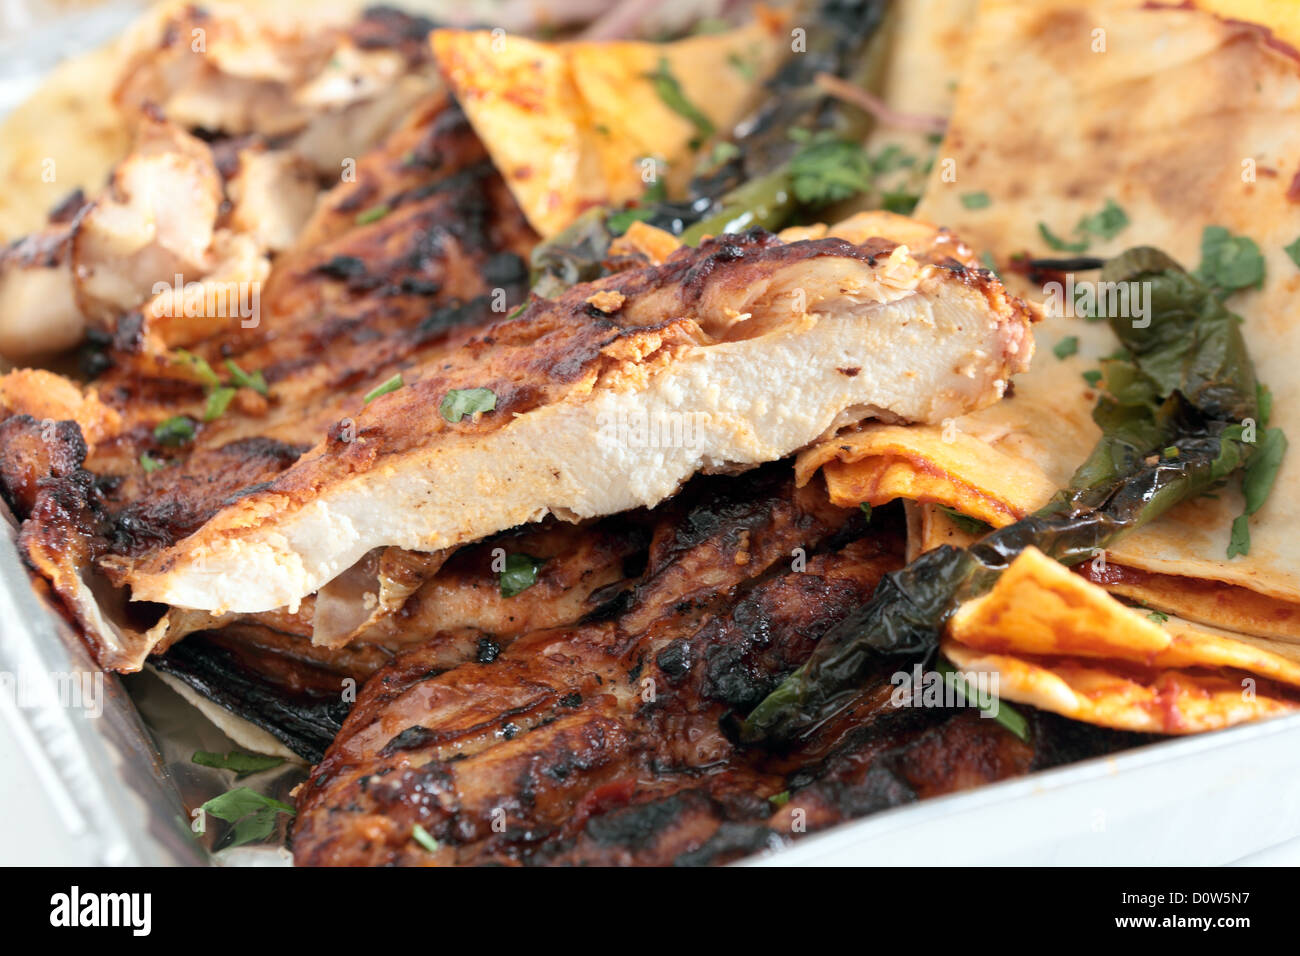 Un ristorante vassoio del bagno turco o arabo spatchcocked, marinaded pollo alla brace, servita con piatto pane arabo, a fette Foto Stock